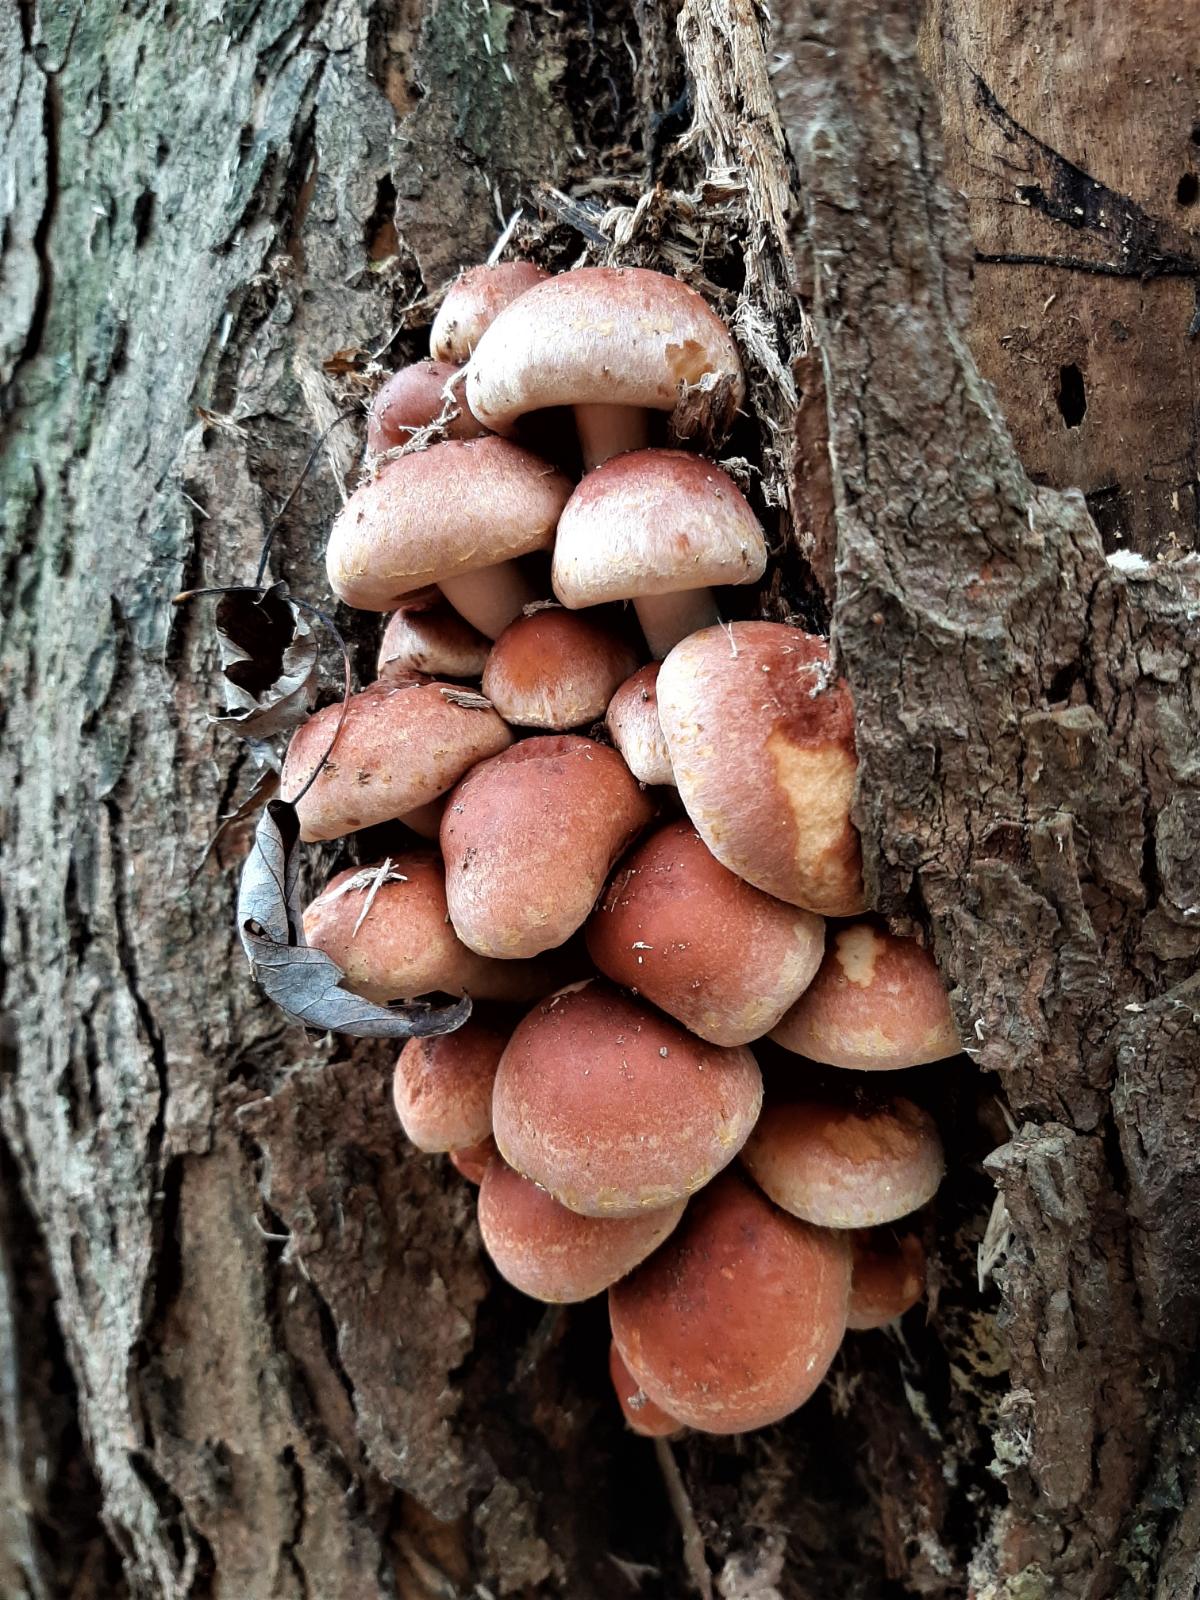 brick cap mushroom on tree